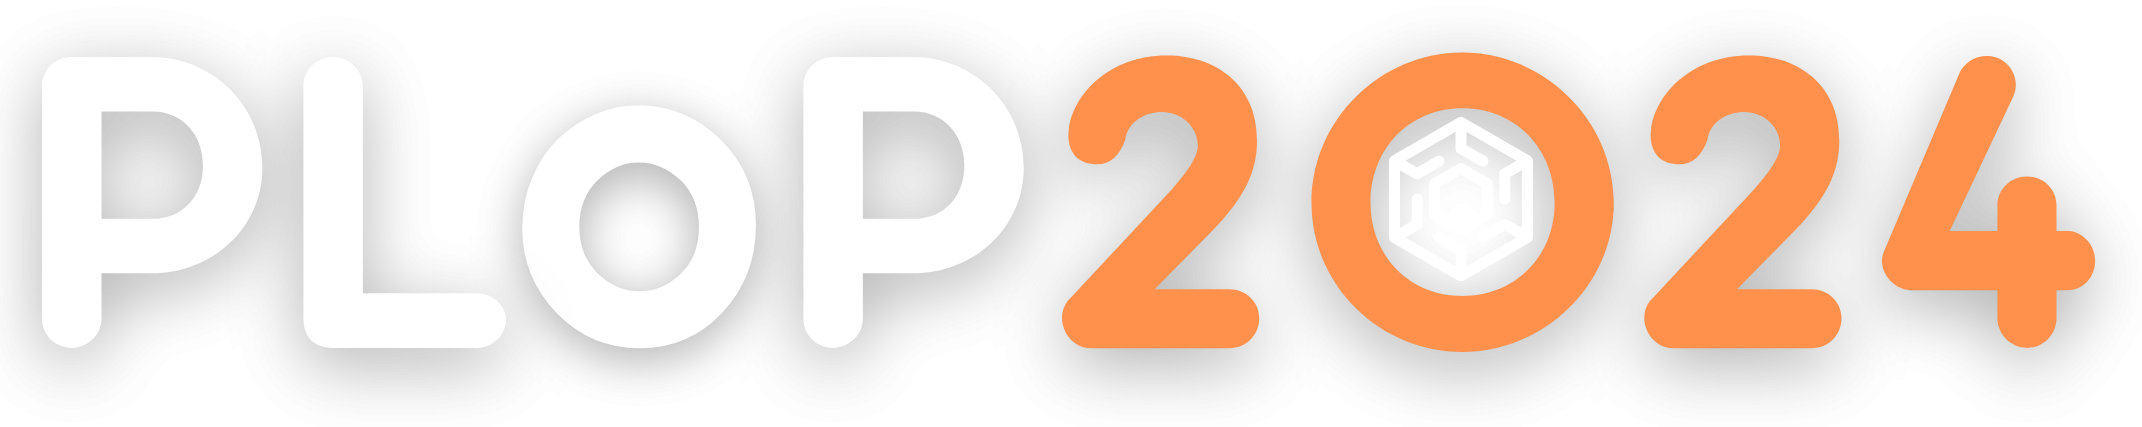 PLoP2024-white-orange-conference-logo